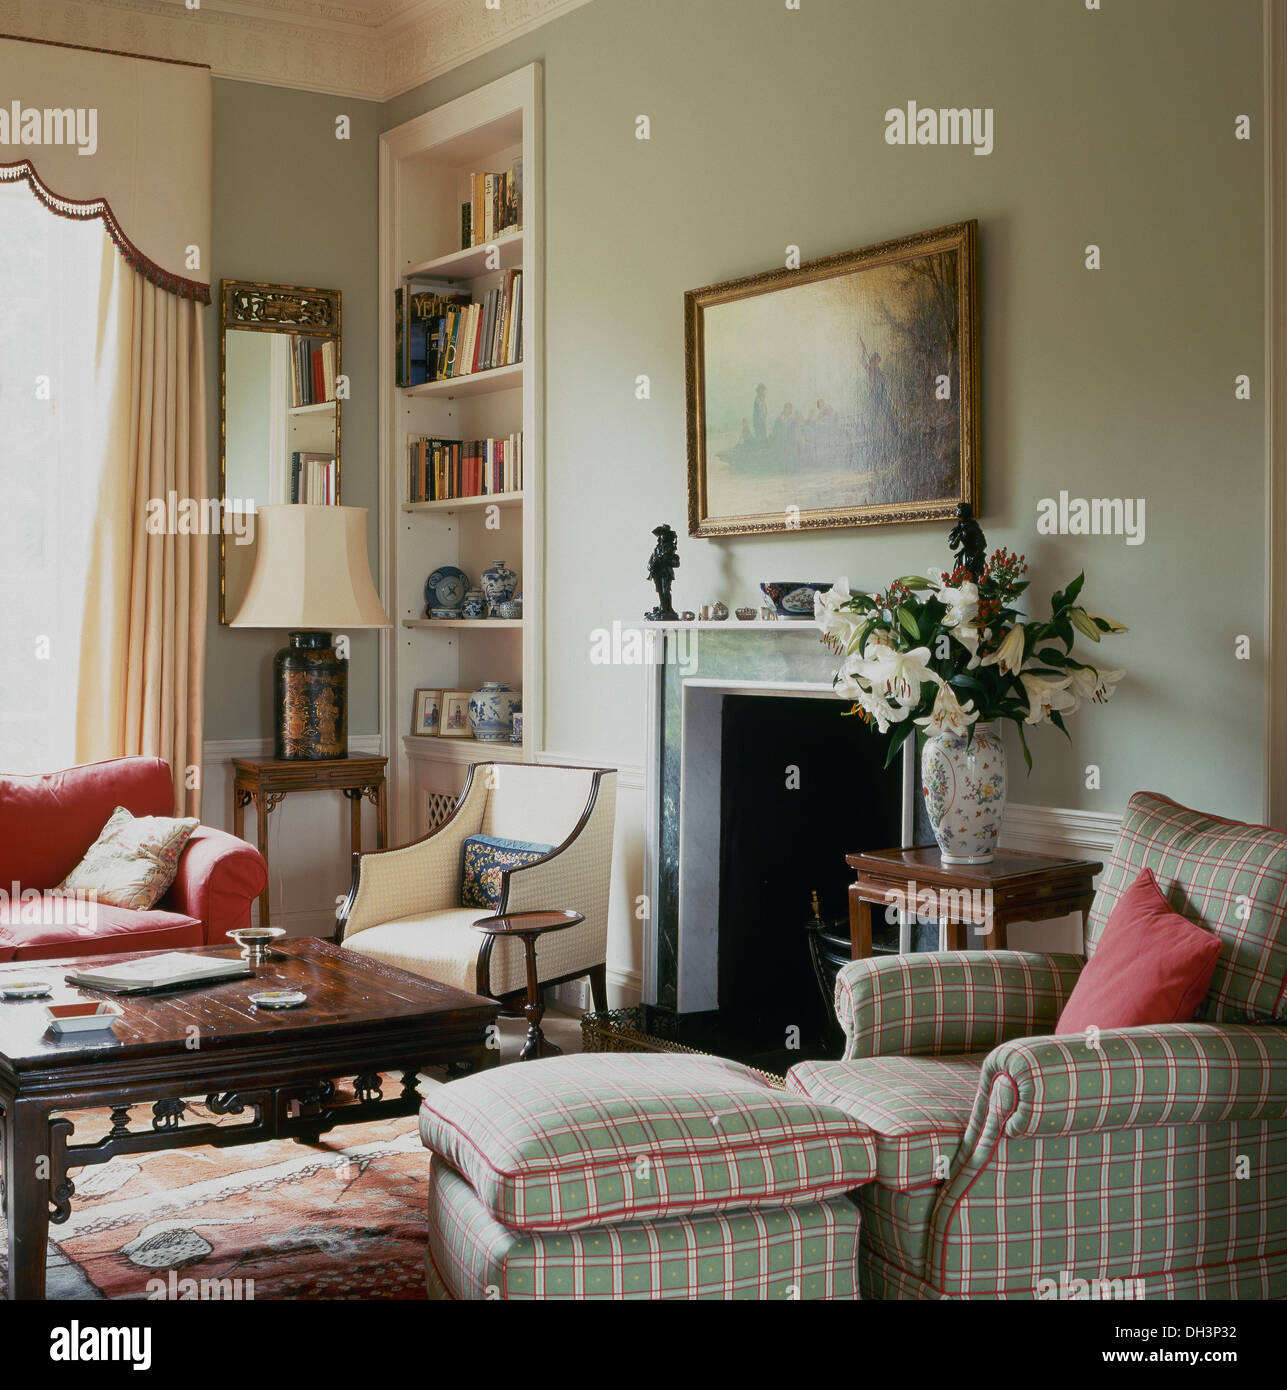 Gestreifte gepolsterte Sessel und passenden Hocker in blass grün Wohnzimmer  mit Alkoven Regale und Mahagoni Couchtisch Stockfotografie - Alamy